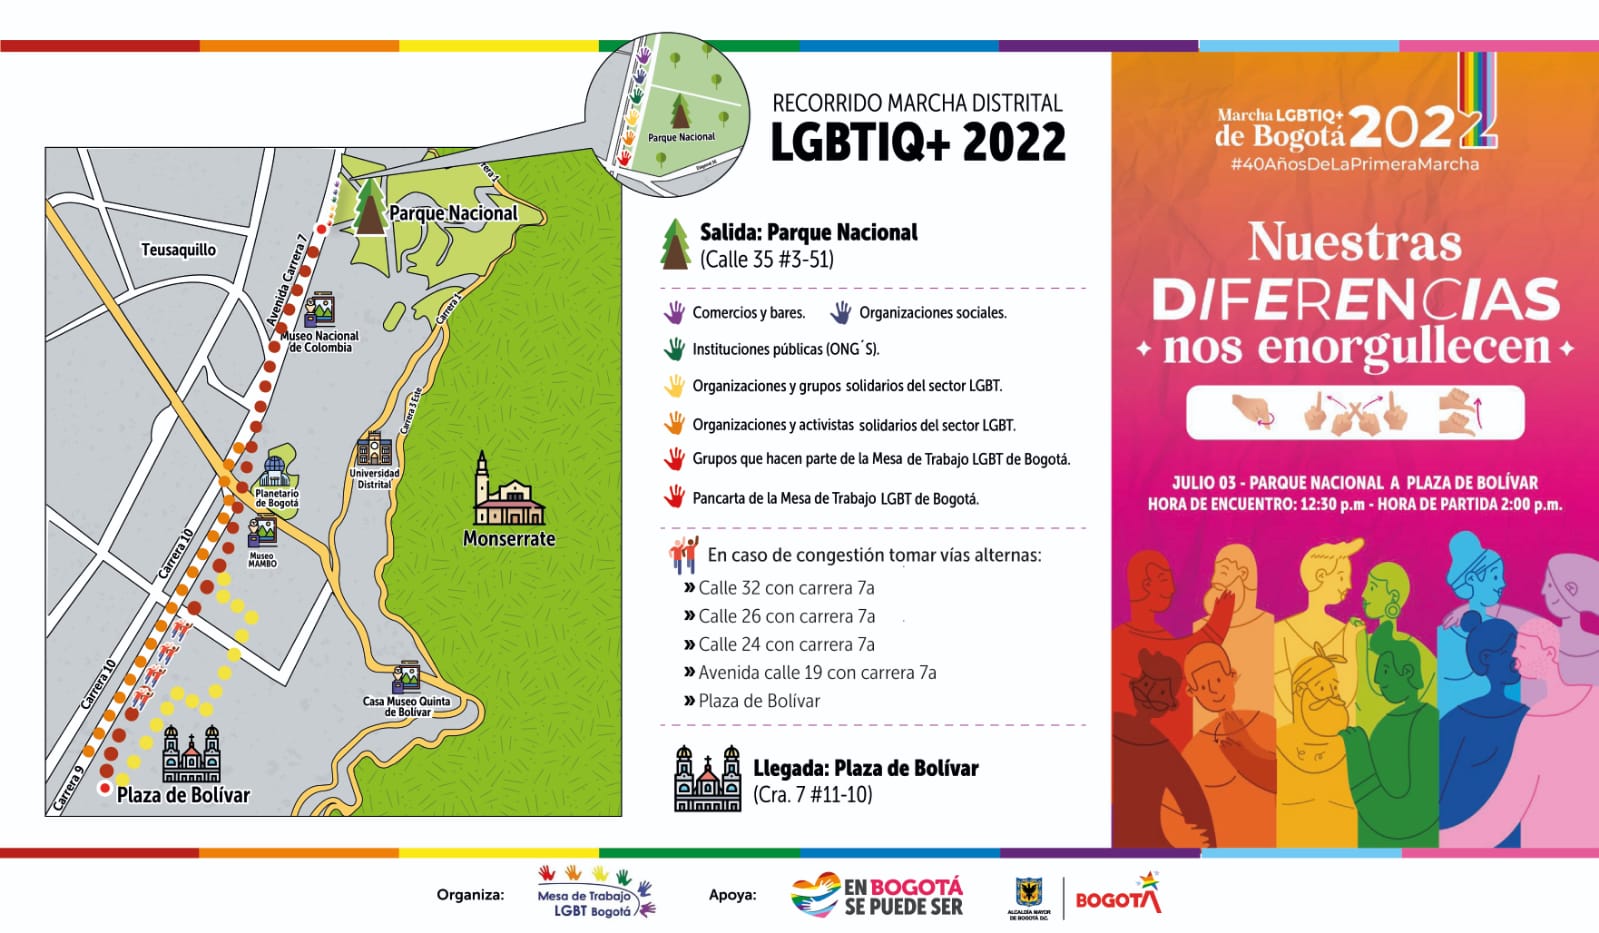 Marcha del Día del Orgullo LGBTIQ+ - PIEZA: Secretaría de Planeación